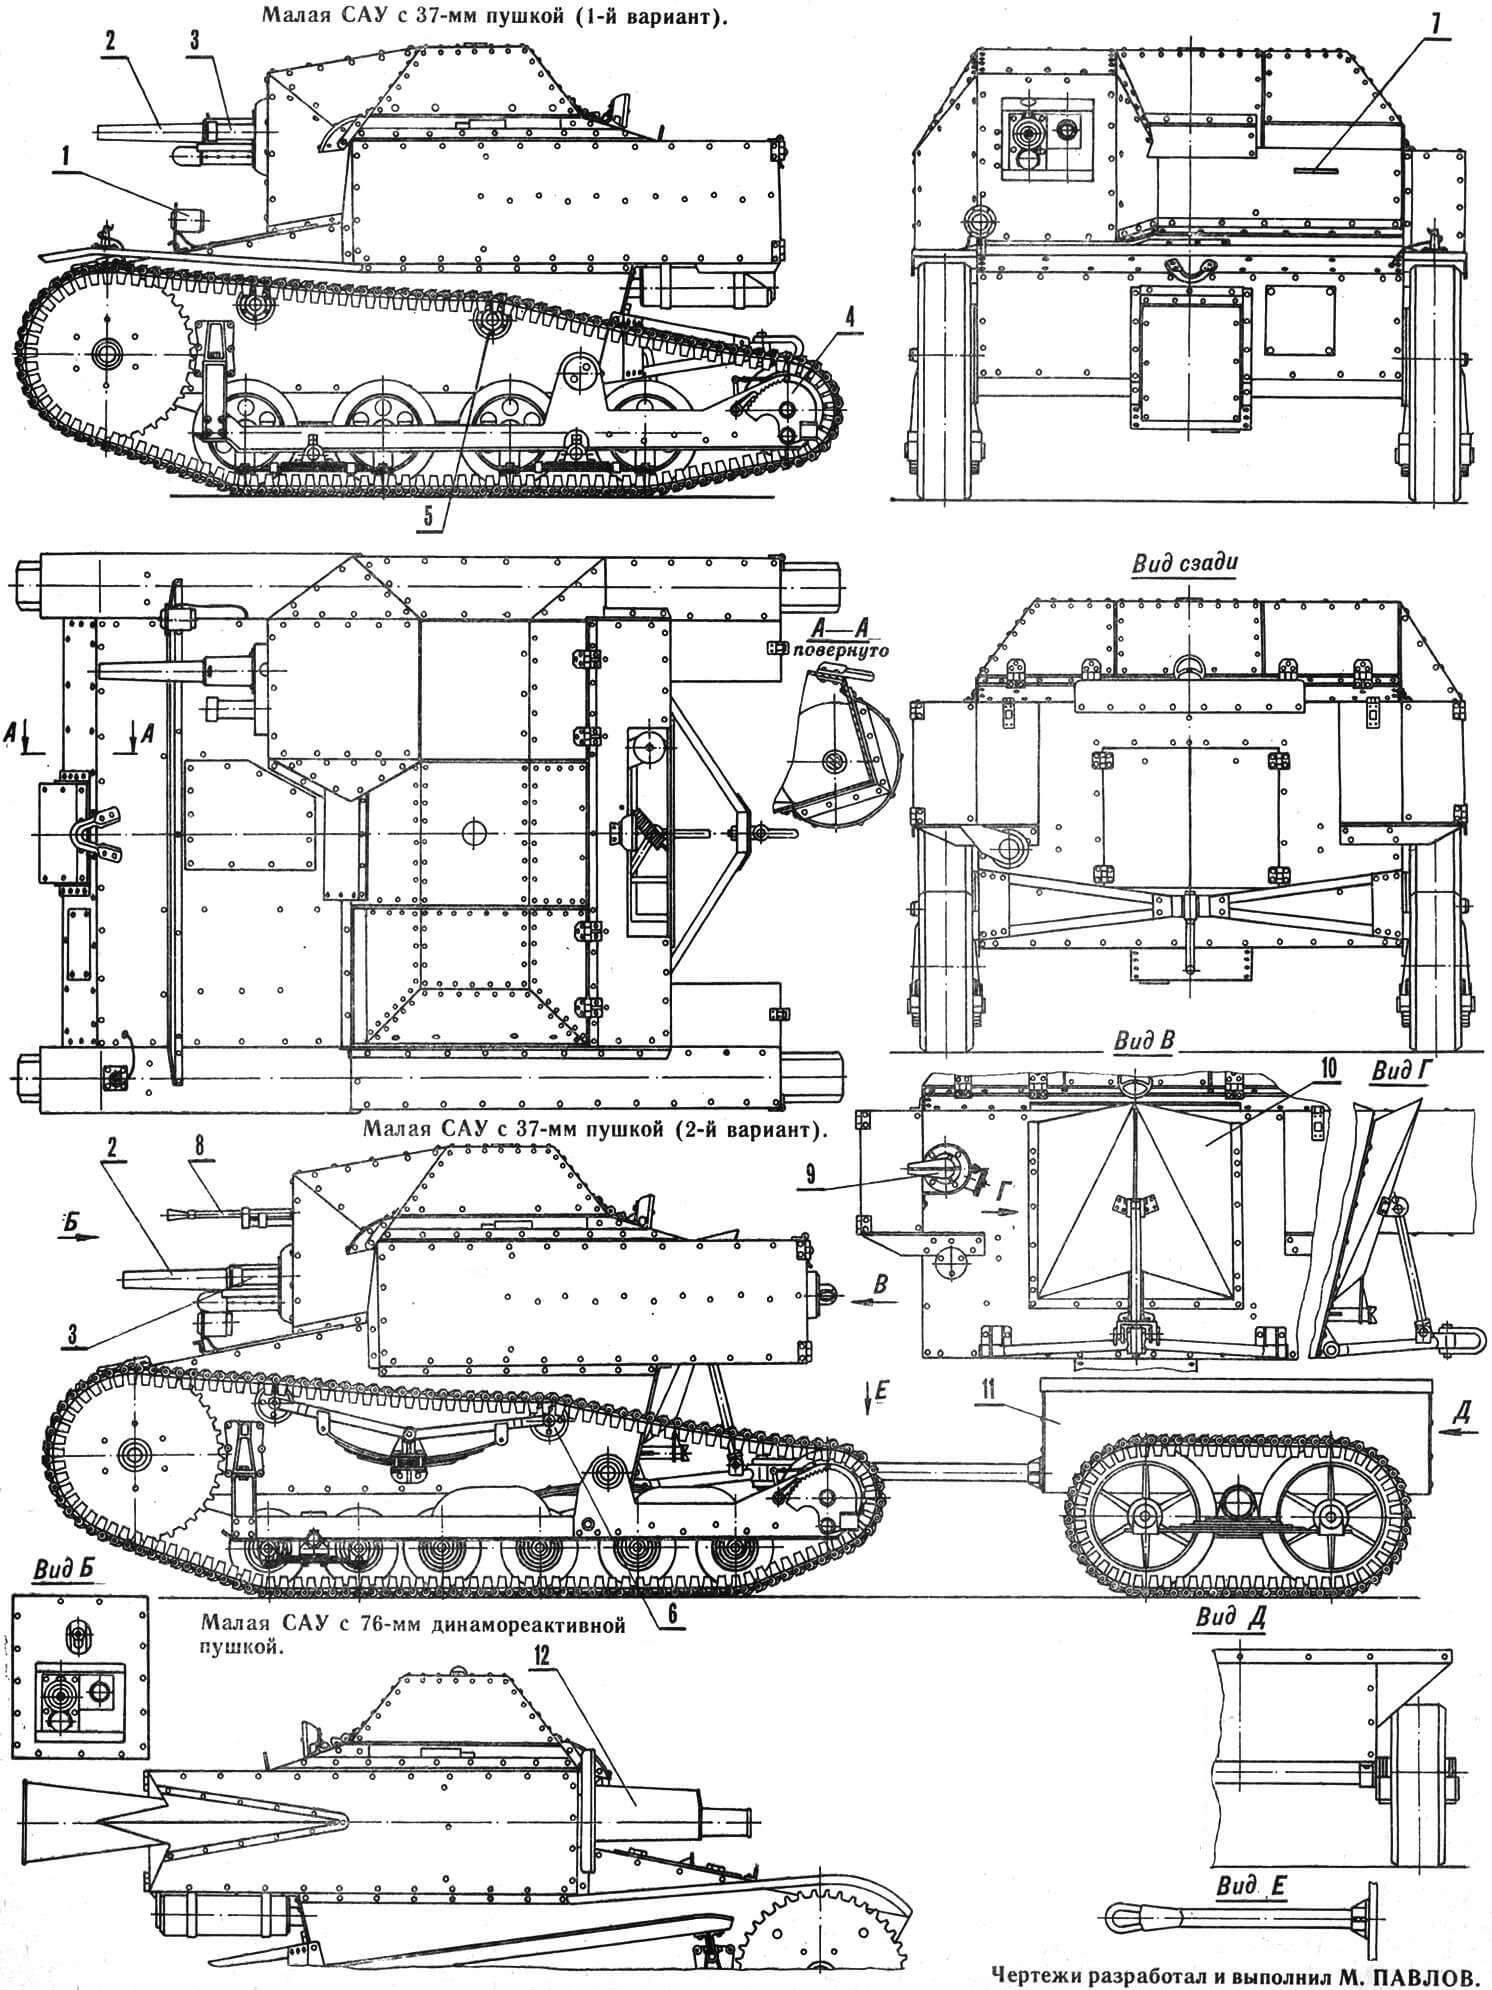 Самоходко-артиллерийские установки на базе Т-27